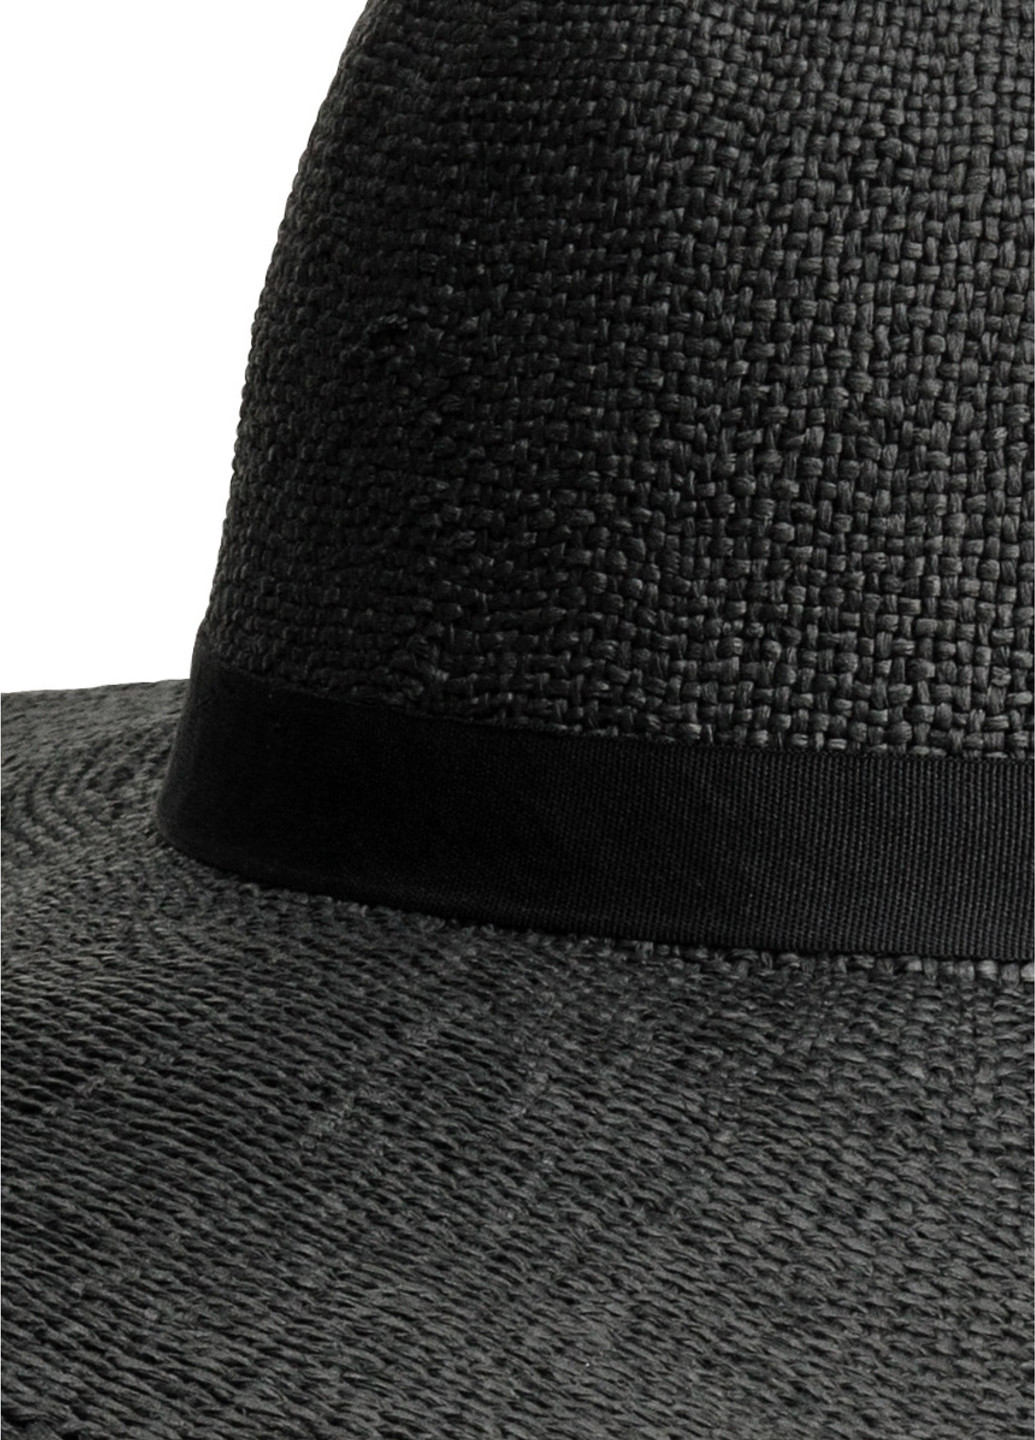 Шляпа H&M широкополая чёрная кэжуал искусственная солома